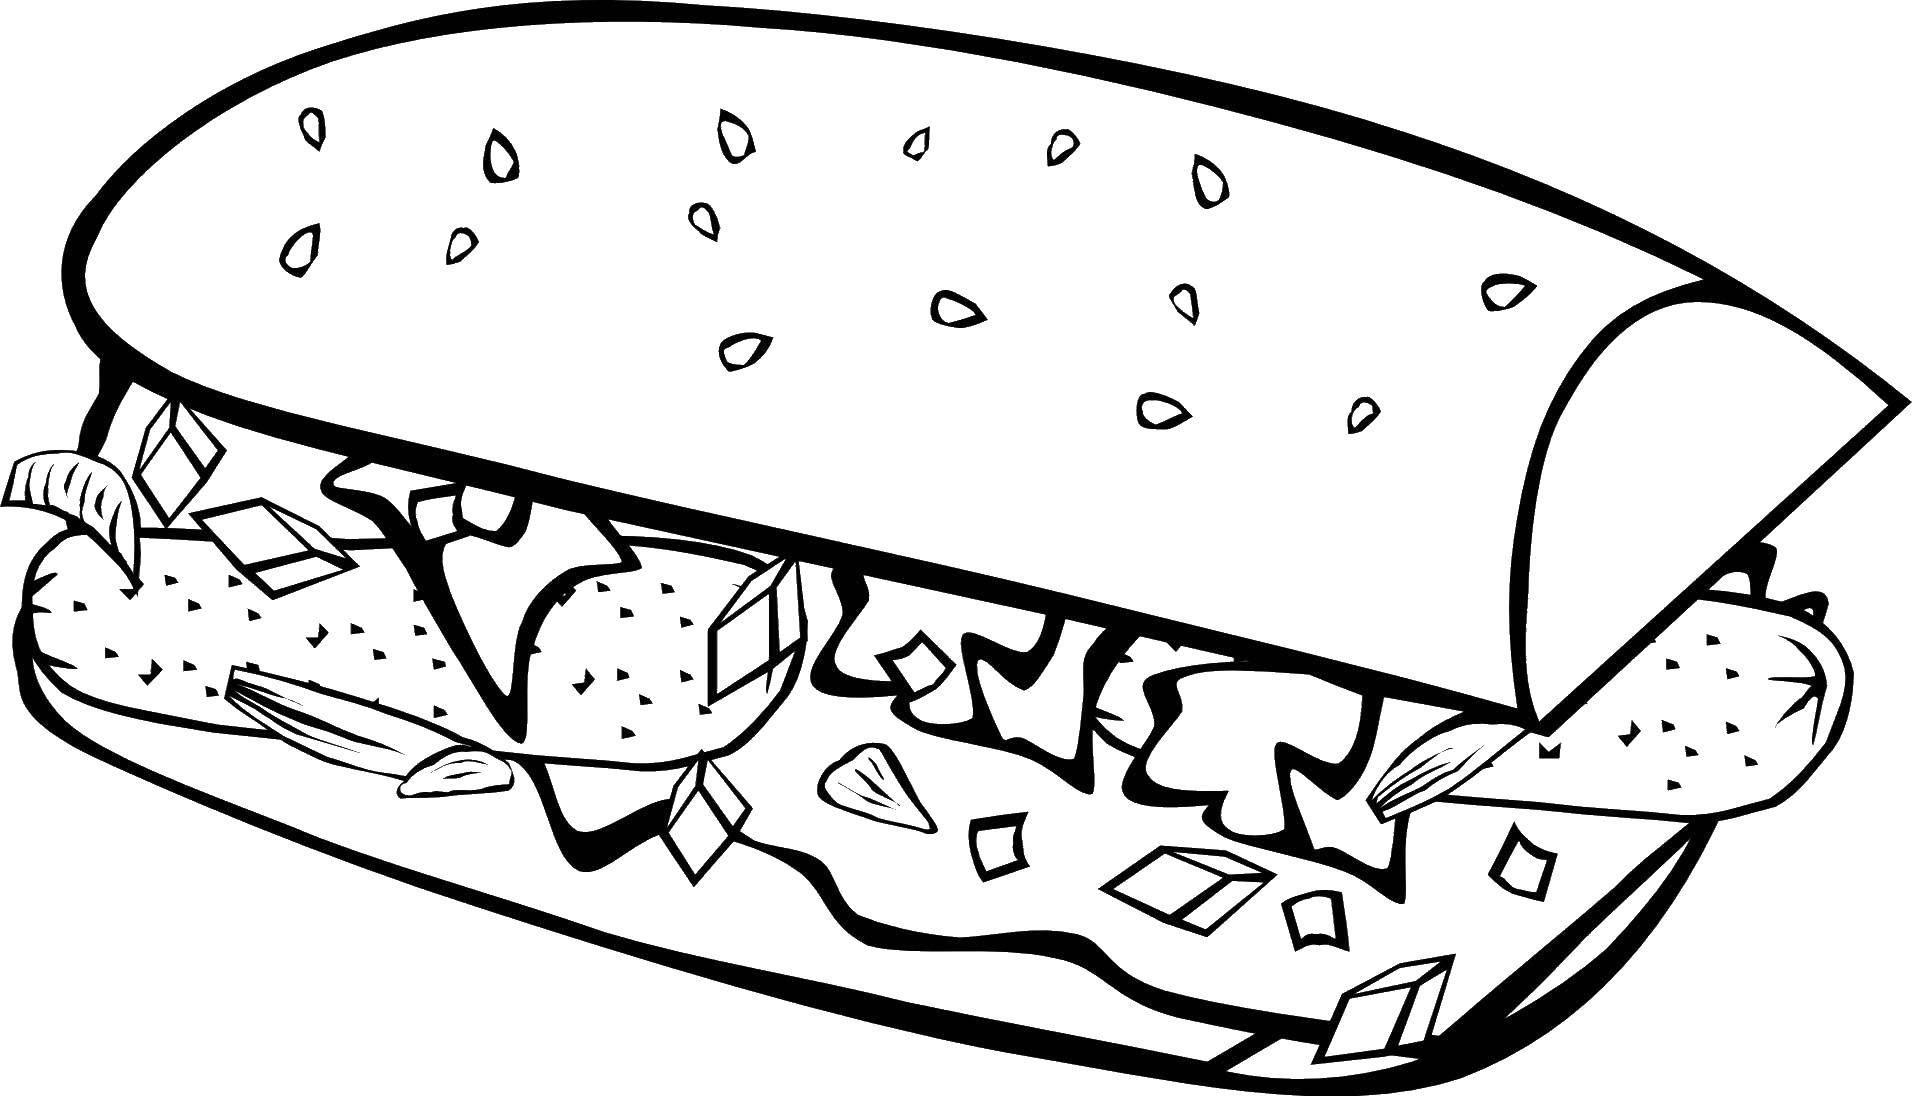 Опис: розмальовки  Бутерброд. Категорія: їжа. Теги:  хліб, сосиски, начинка.